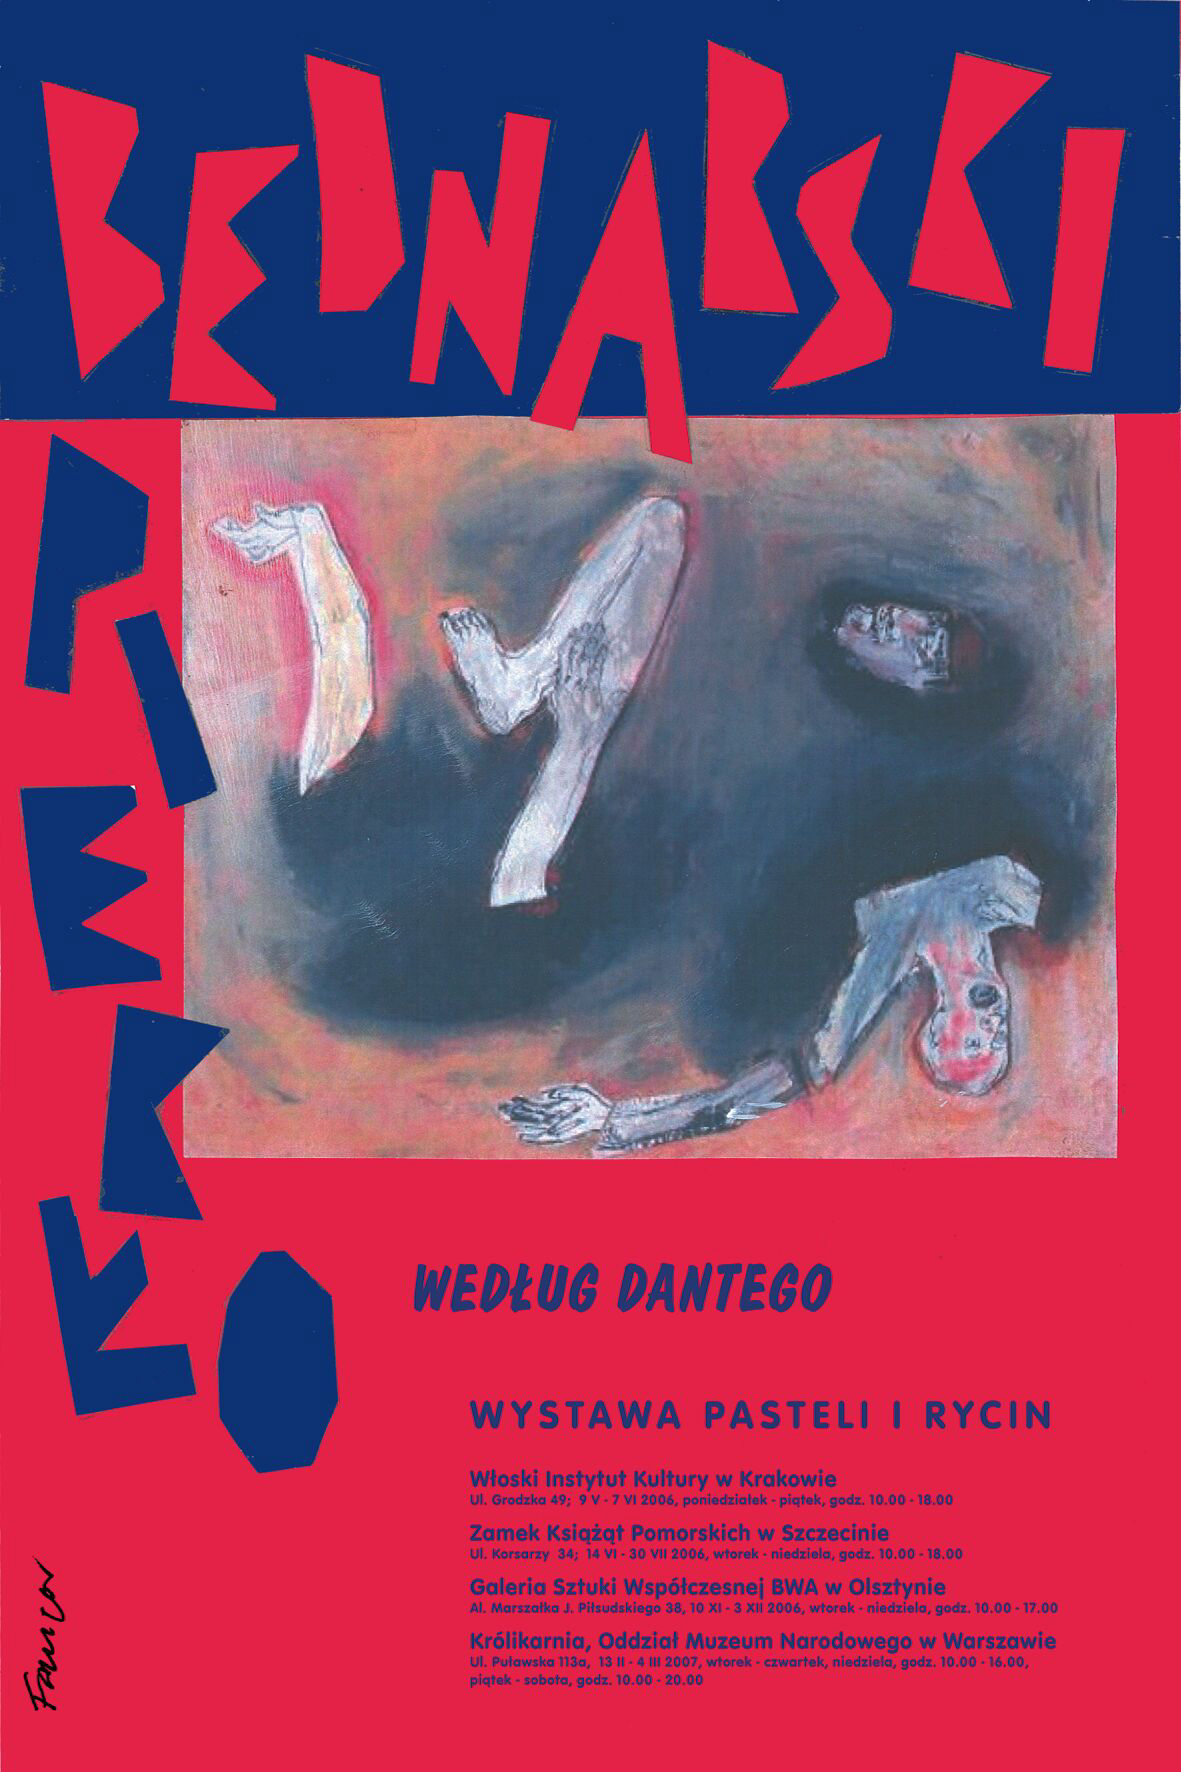 Wojciech Fangor: Piekło według Dantego. Bednarski, 2006